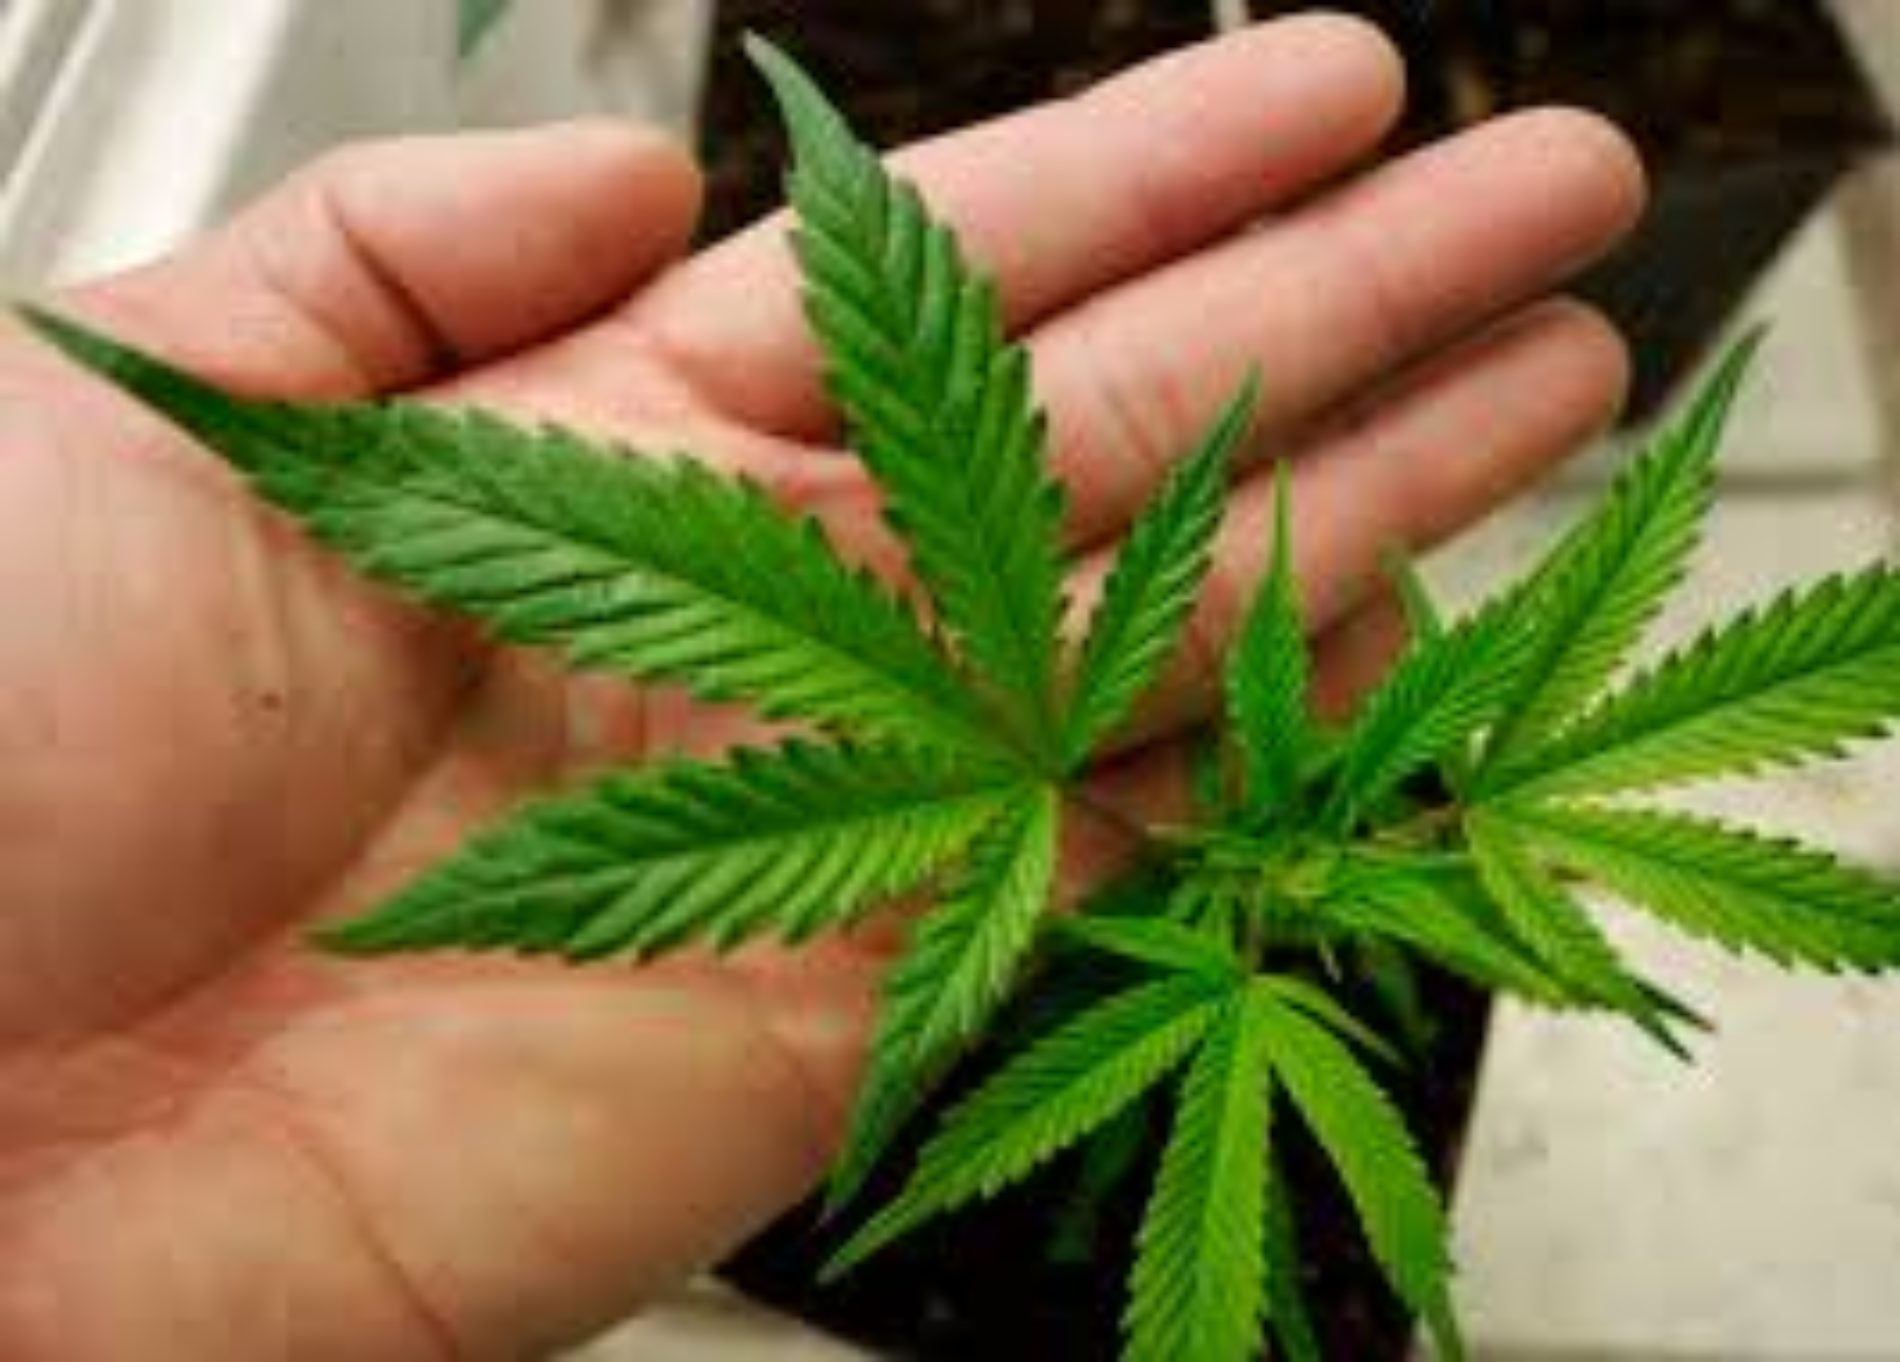 Piantine di Cannabis ritrovate in contrada Albana. Carmelo Forgia: ” Sono per uso terapeutico al fine di combattere il cancro”.